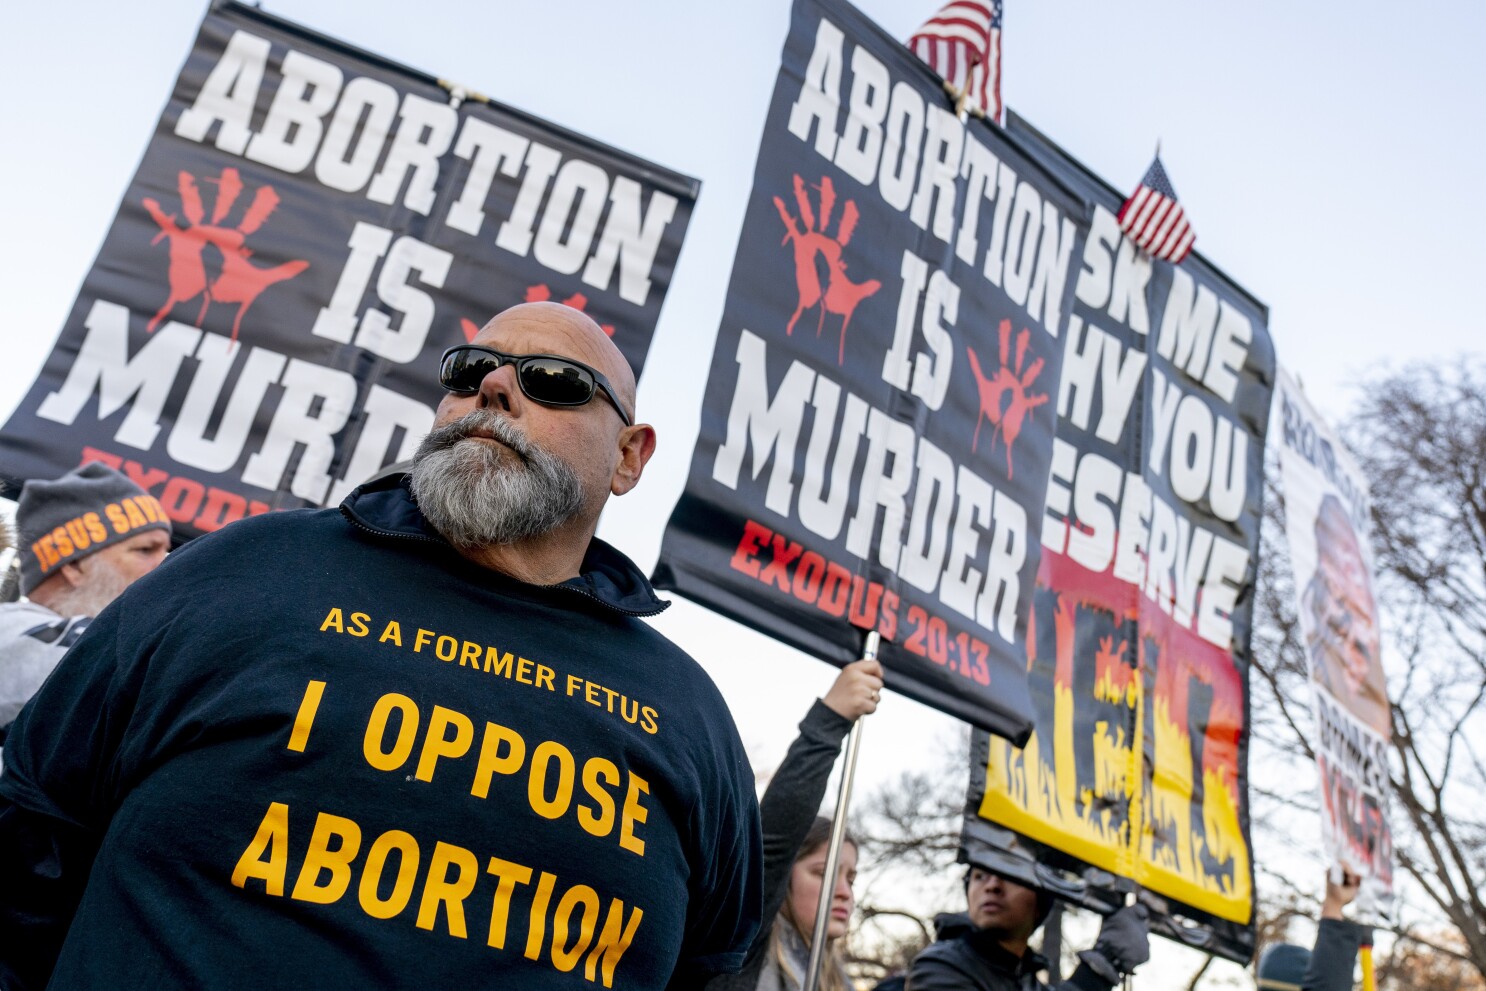 EEUU: Corte Suprema se inclina por límites al aborto - Los Angeles Times